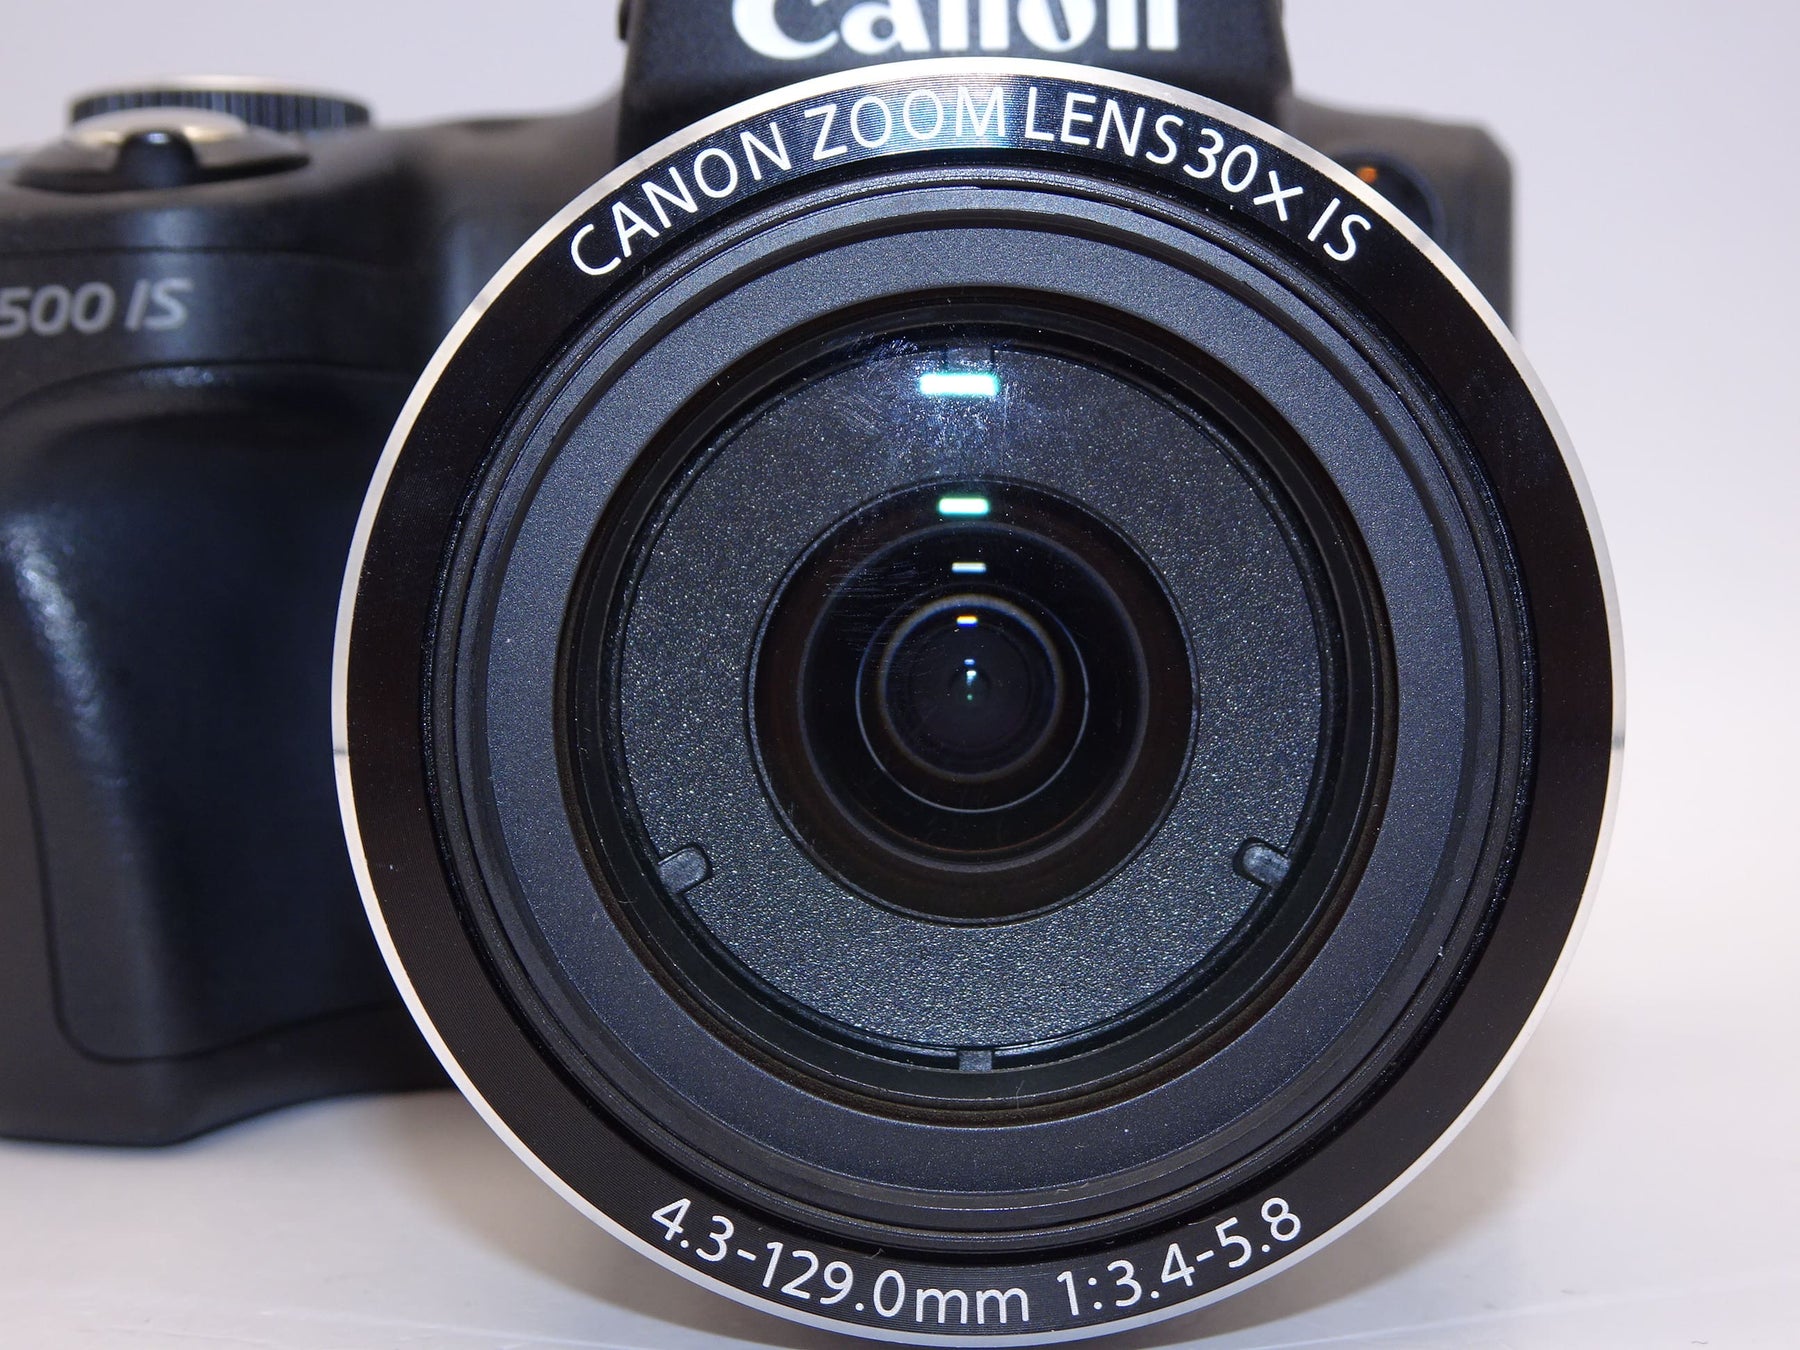 【外観特上級】Canon デジタルカメラ PowerShot SX500IS ブラック